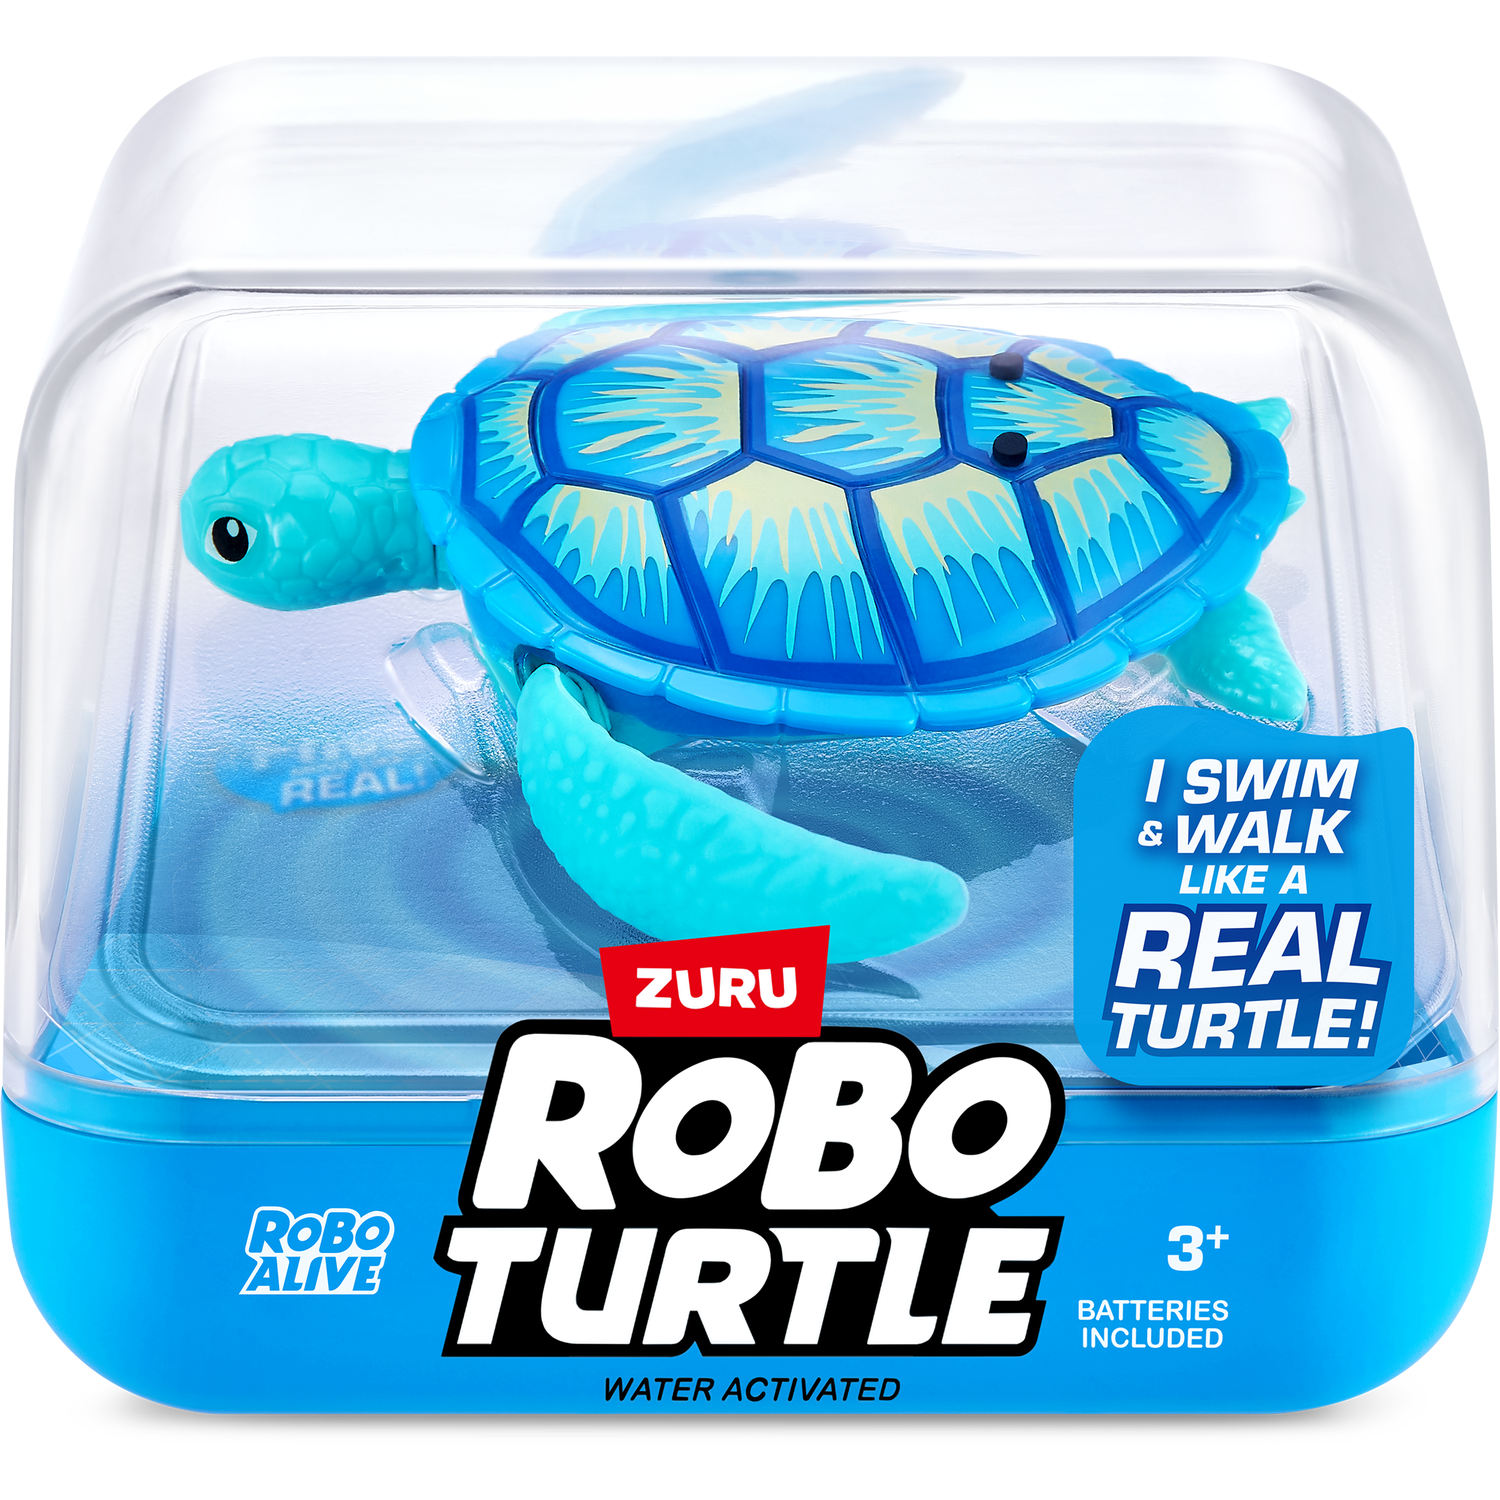 Robo Turtle Image 2